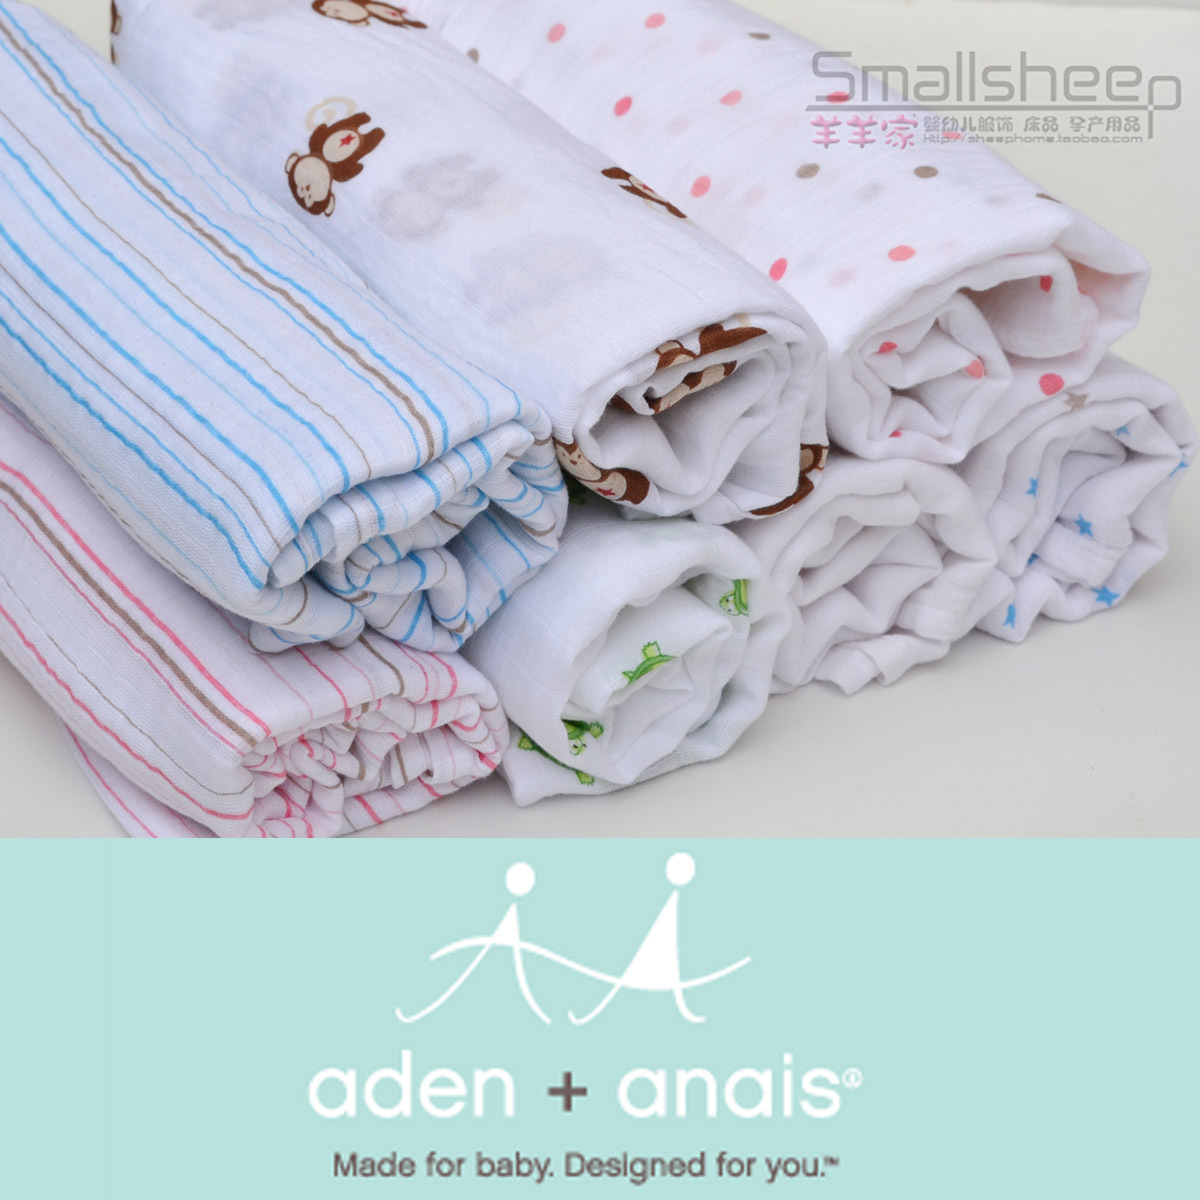 Аден anais младенцы новорожденных поставки младенцы марля хлопок 100% вмещает одеяла банное полотенце